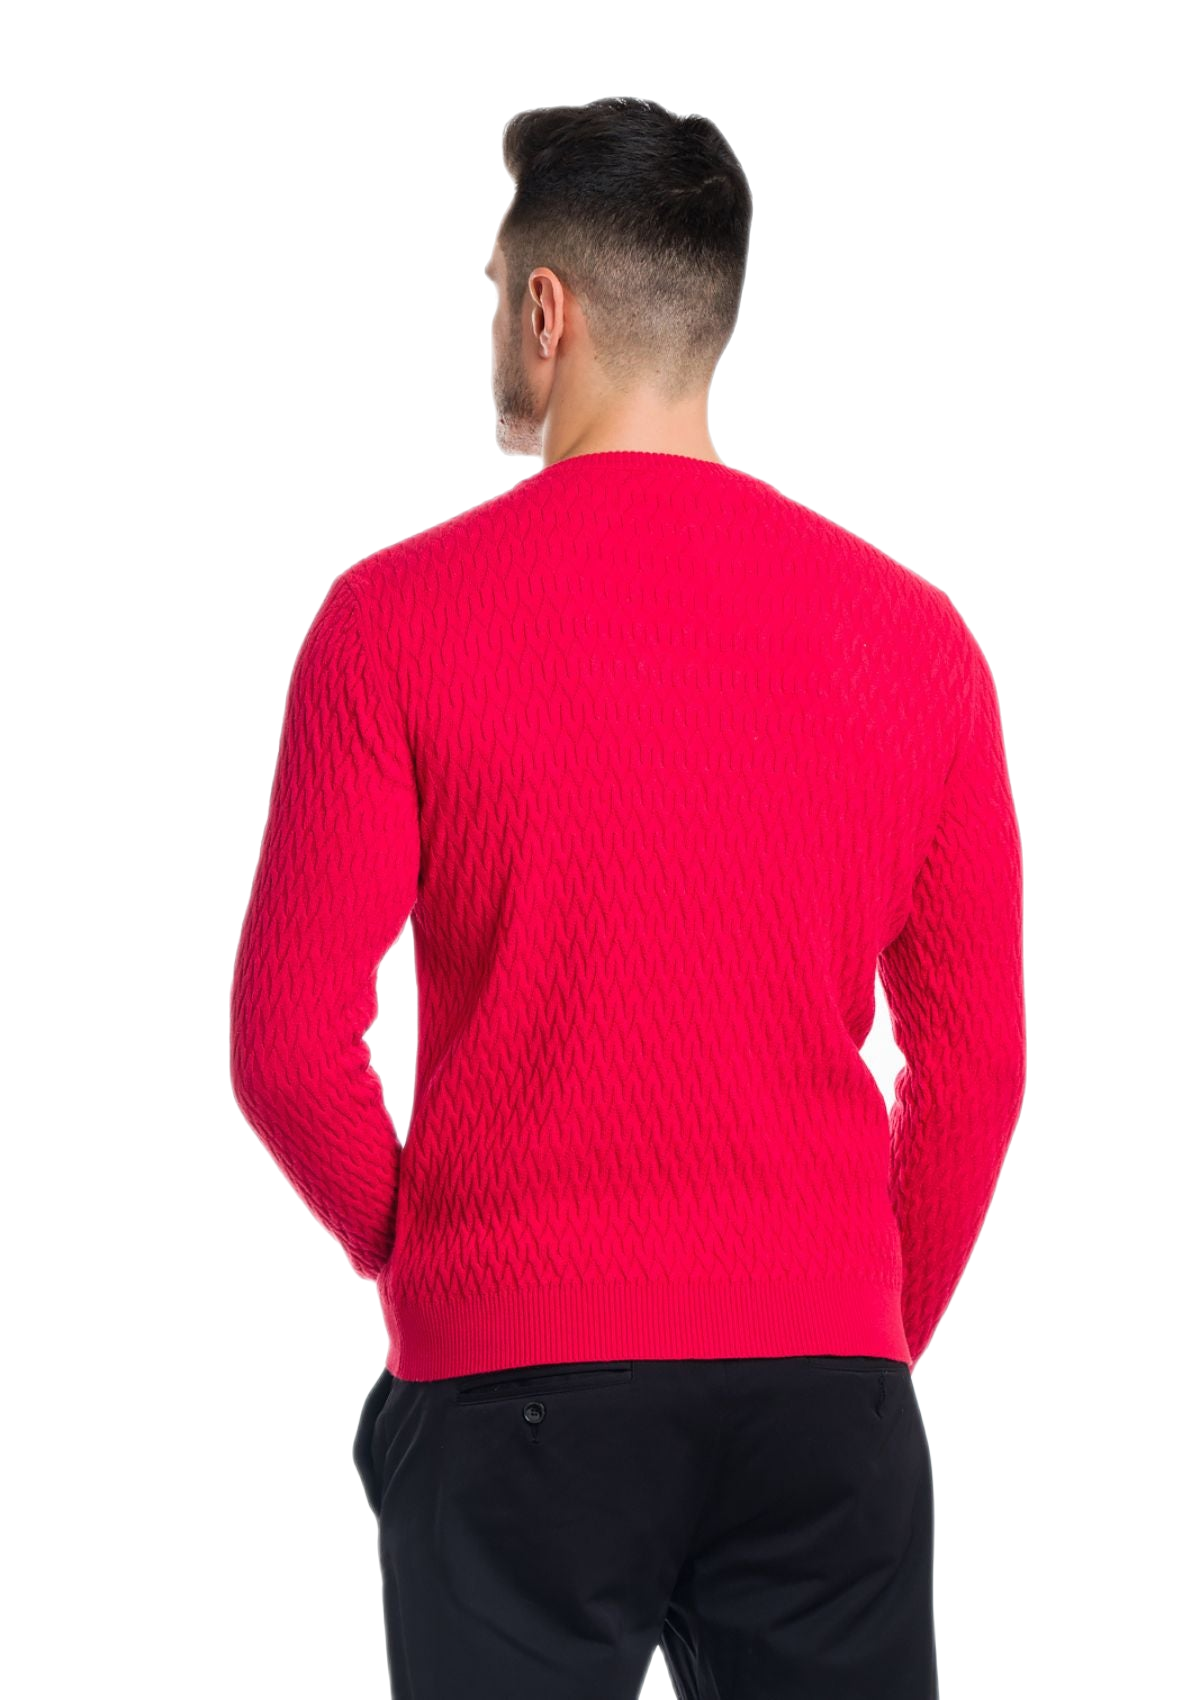 retro maglia uomo leggera in cotone e cashmere rossa